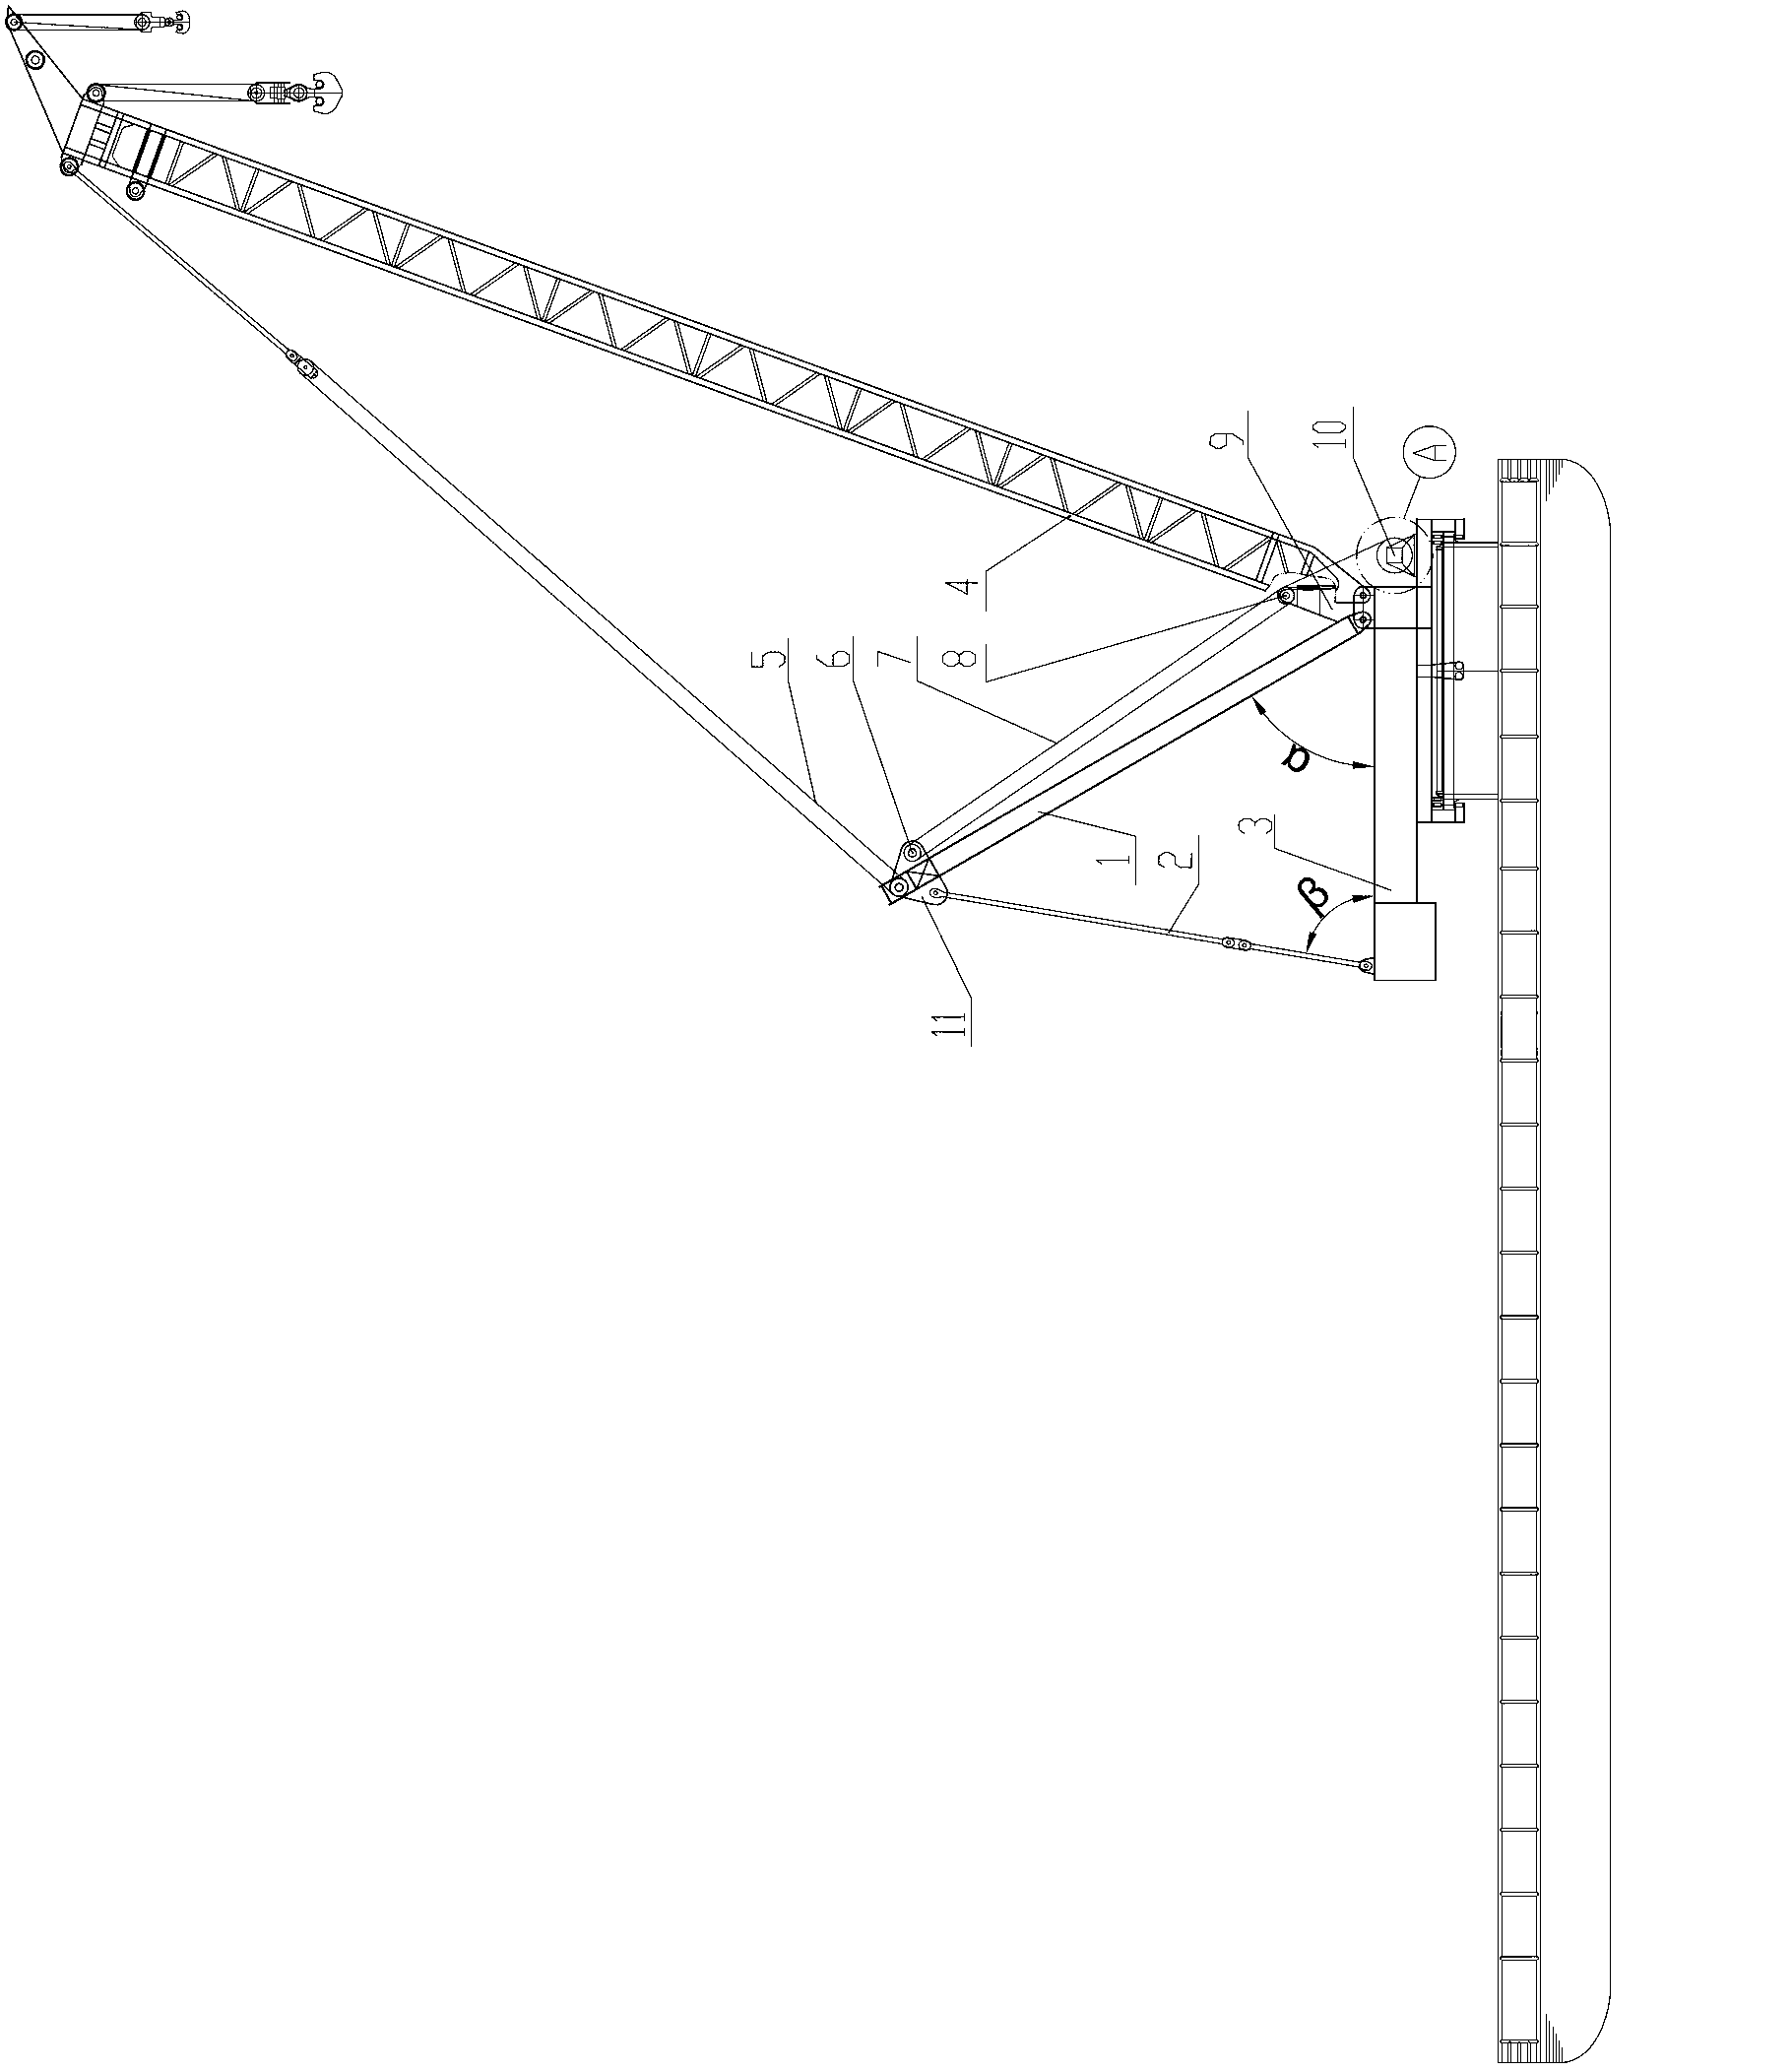 Propeller strut device of floating crane